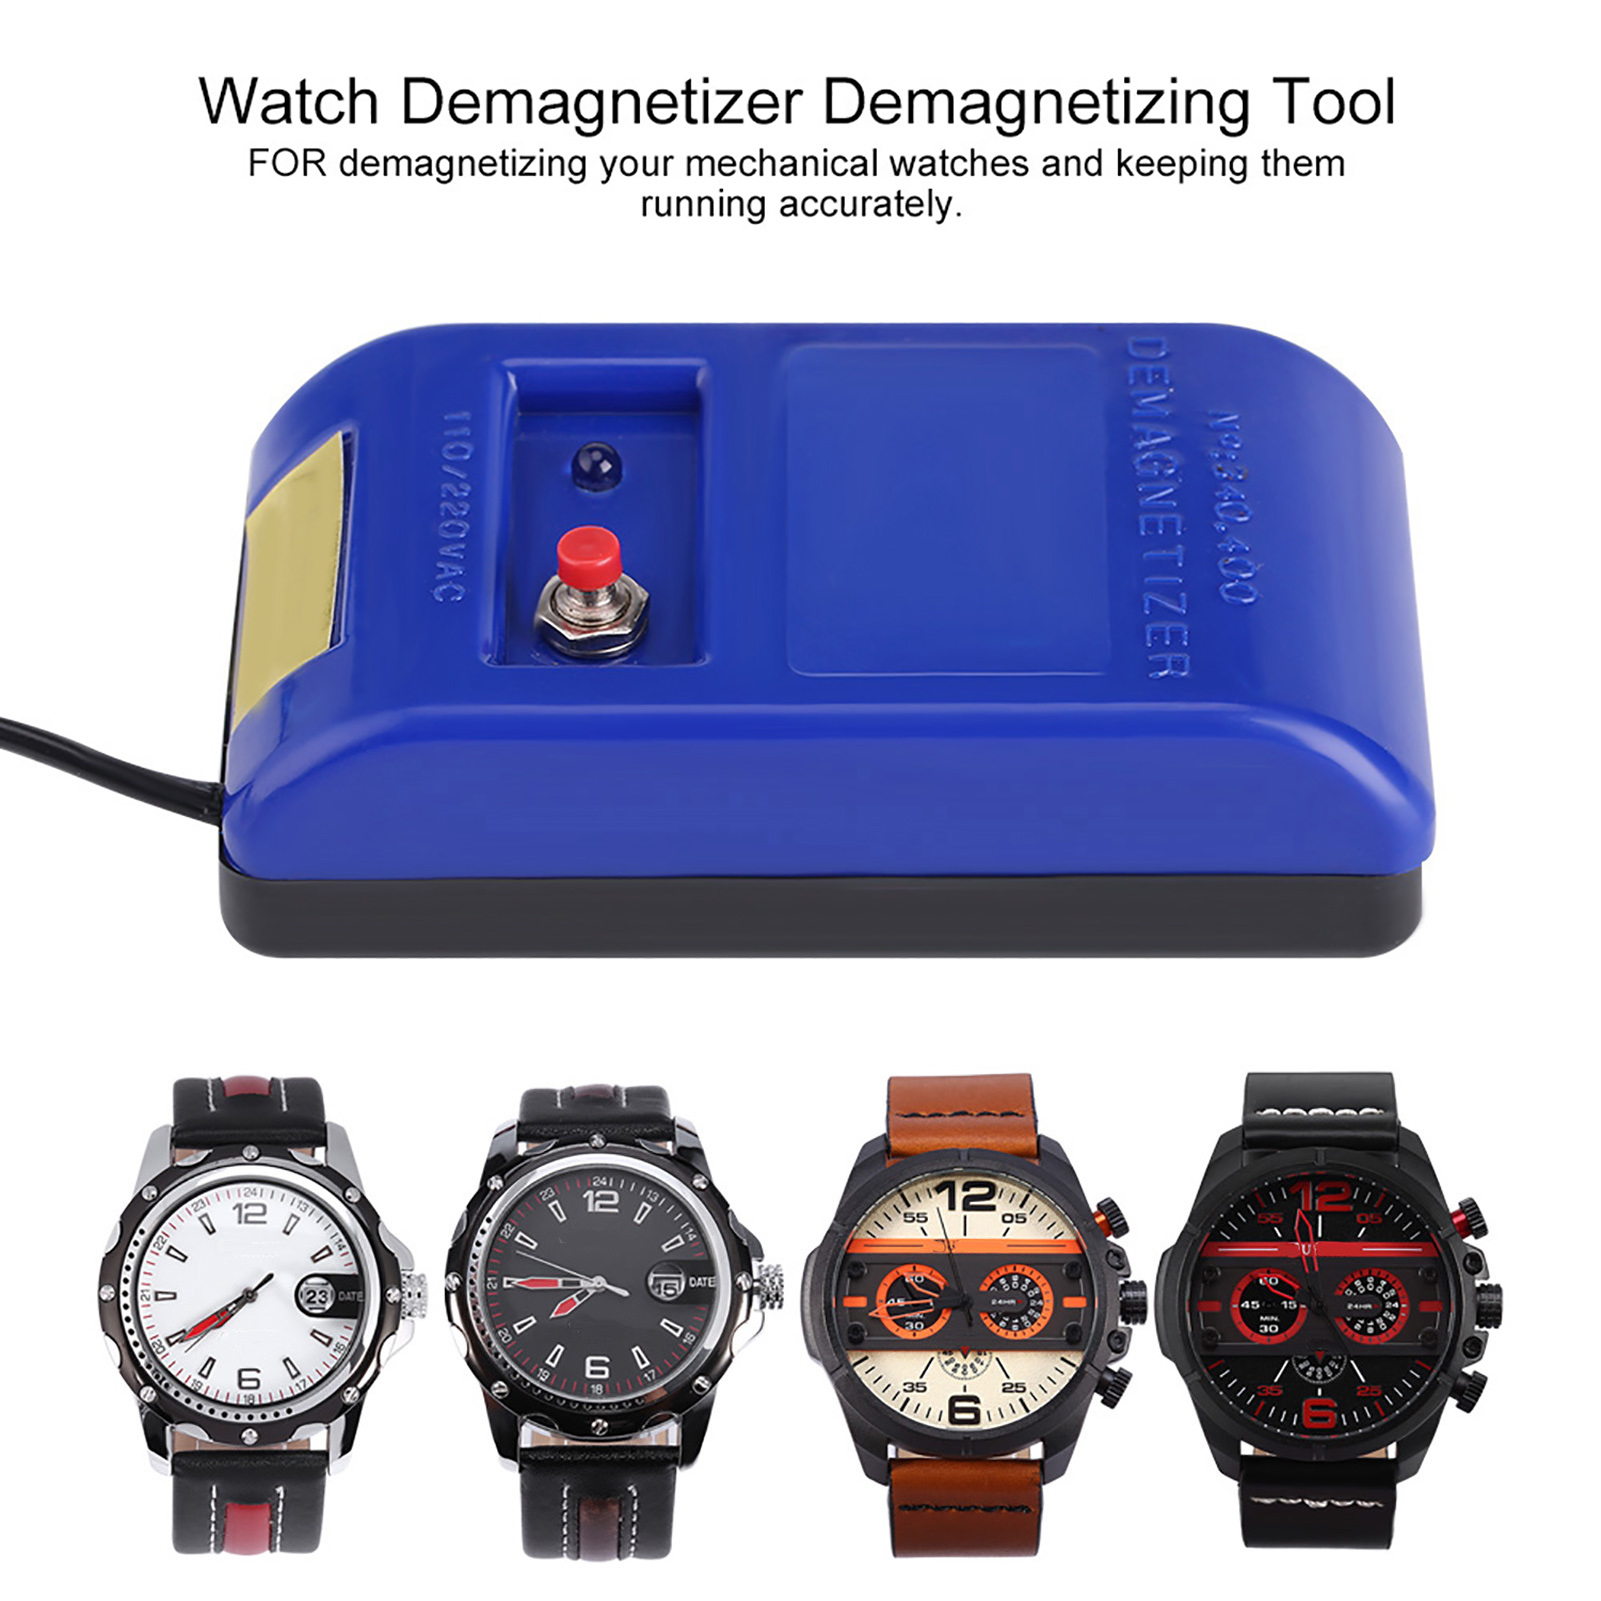 รายละเอียดเพิ่มเติมเกี่ยวกับ มืออาชีพเชิงกลนาฬิกาข้อมือ Demagnetizer นาฬิกาซ่อมแซม Demagnetizing Demagnetize Tool เครื่องมือ 110/220 โวลต์ - นานาชาติ